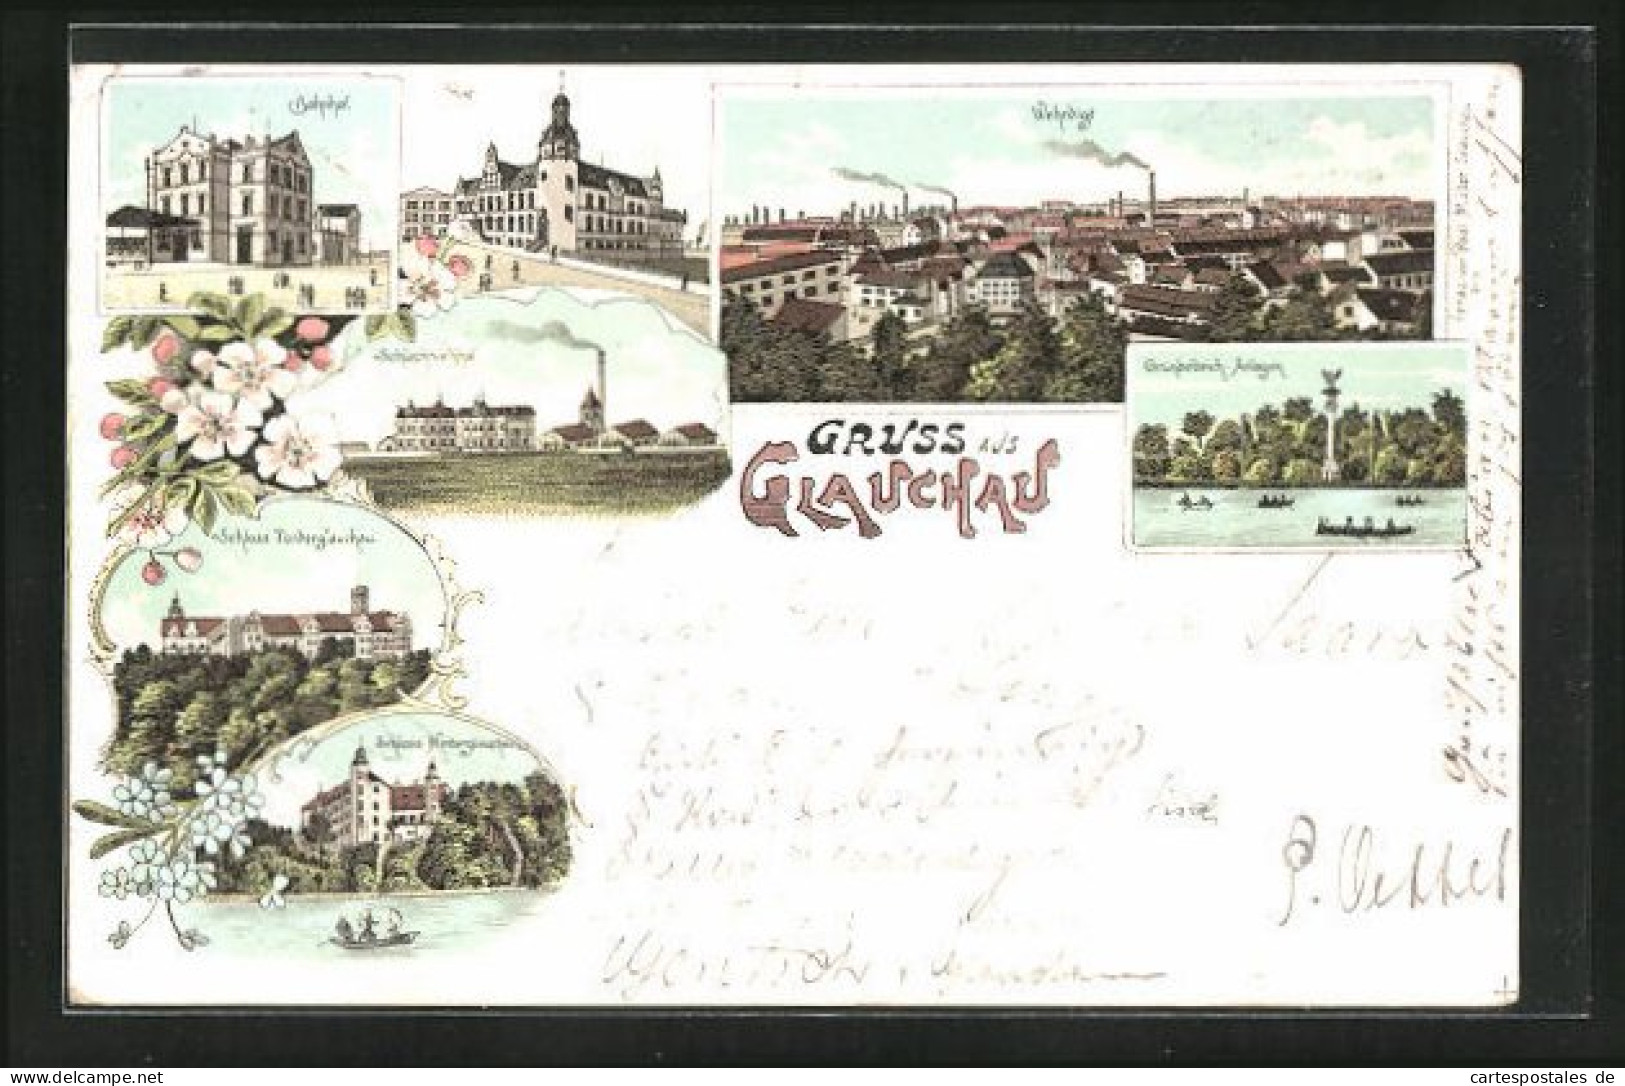 Lithographie Glauchau, Bahnhof, Post, Schlachtviehhof, Schlösser  - Glauchau